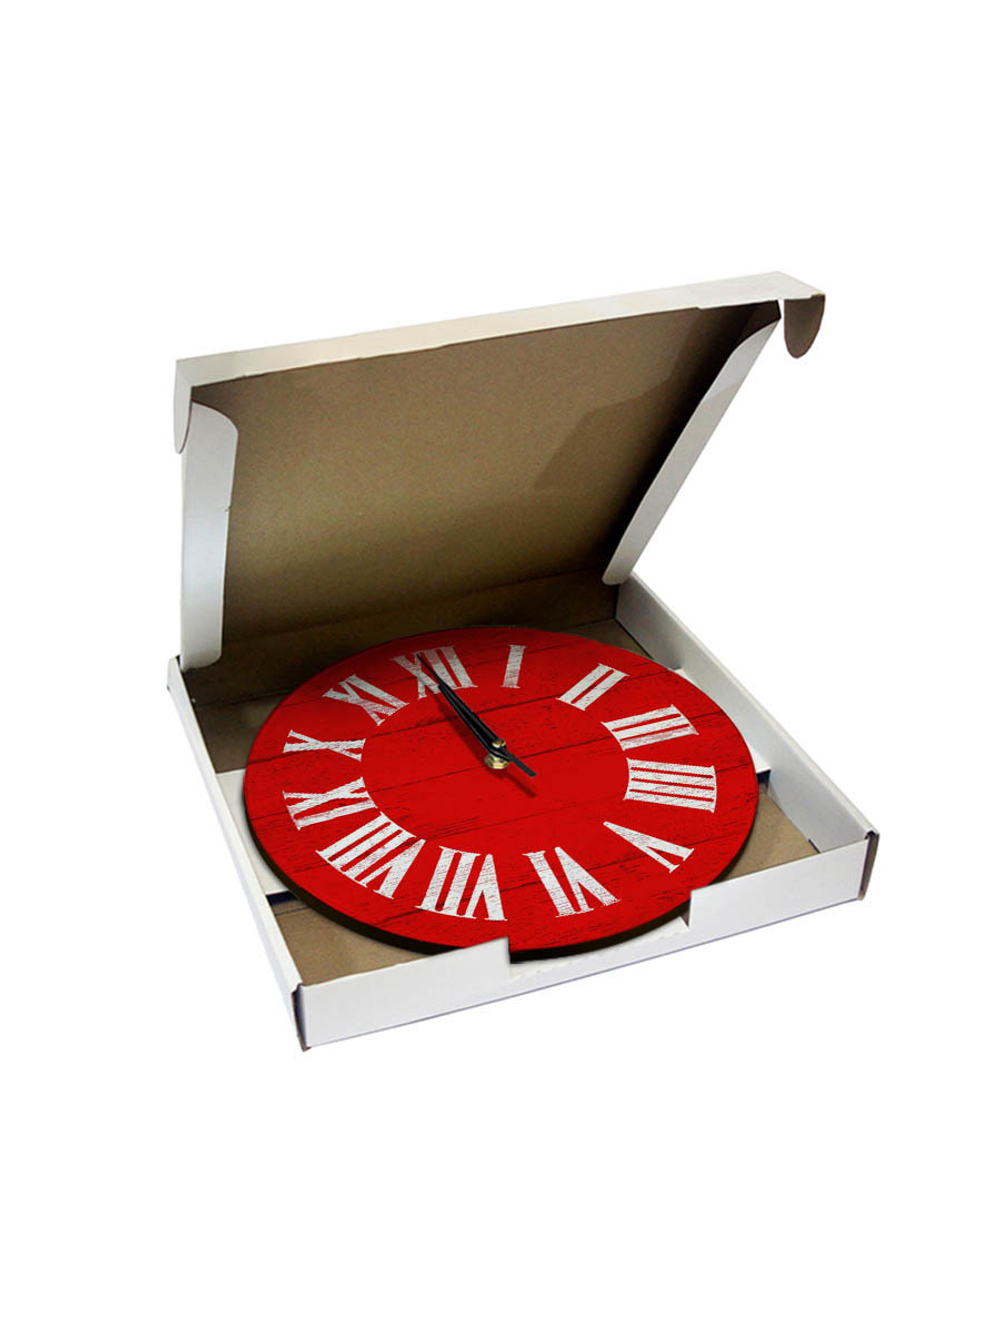 Часы настенные деревянные IDEAL "Римские", 30 см, красные